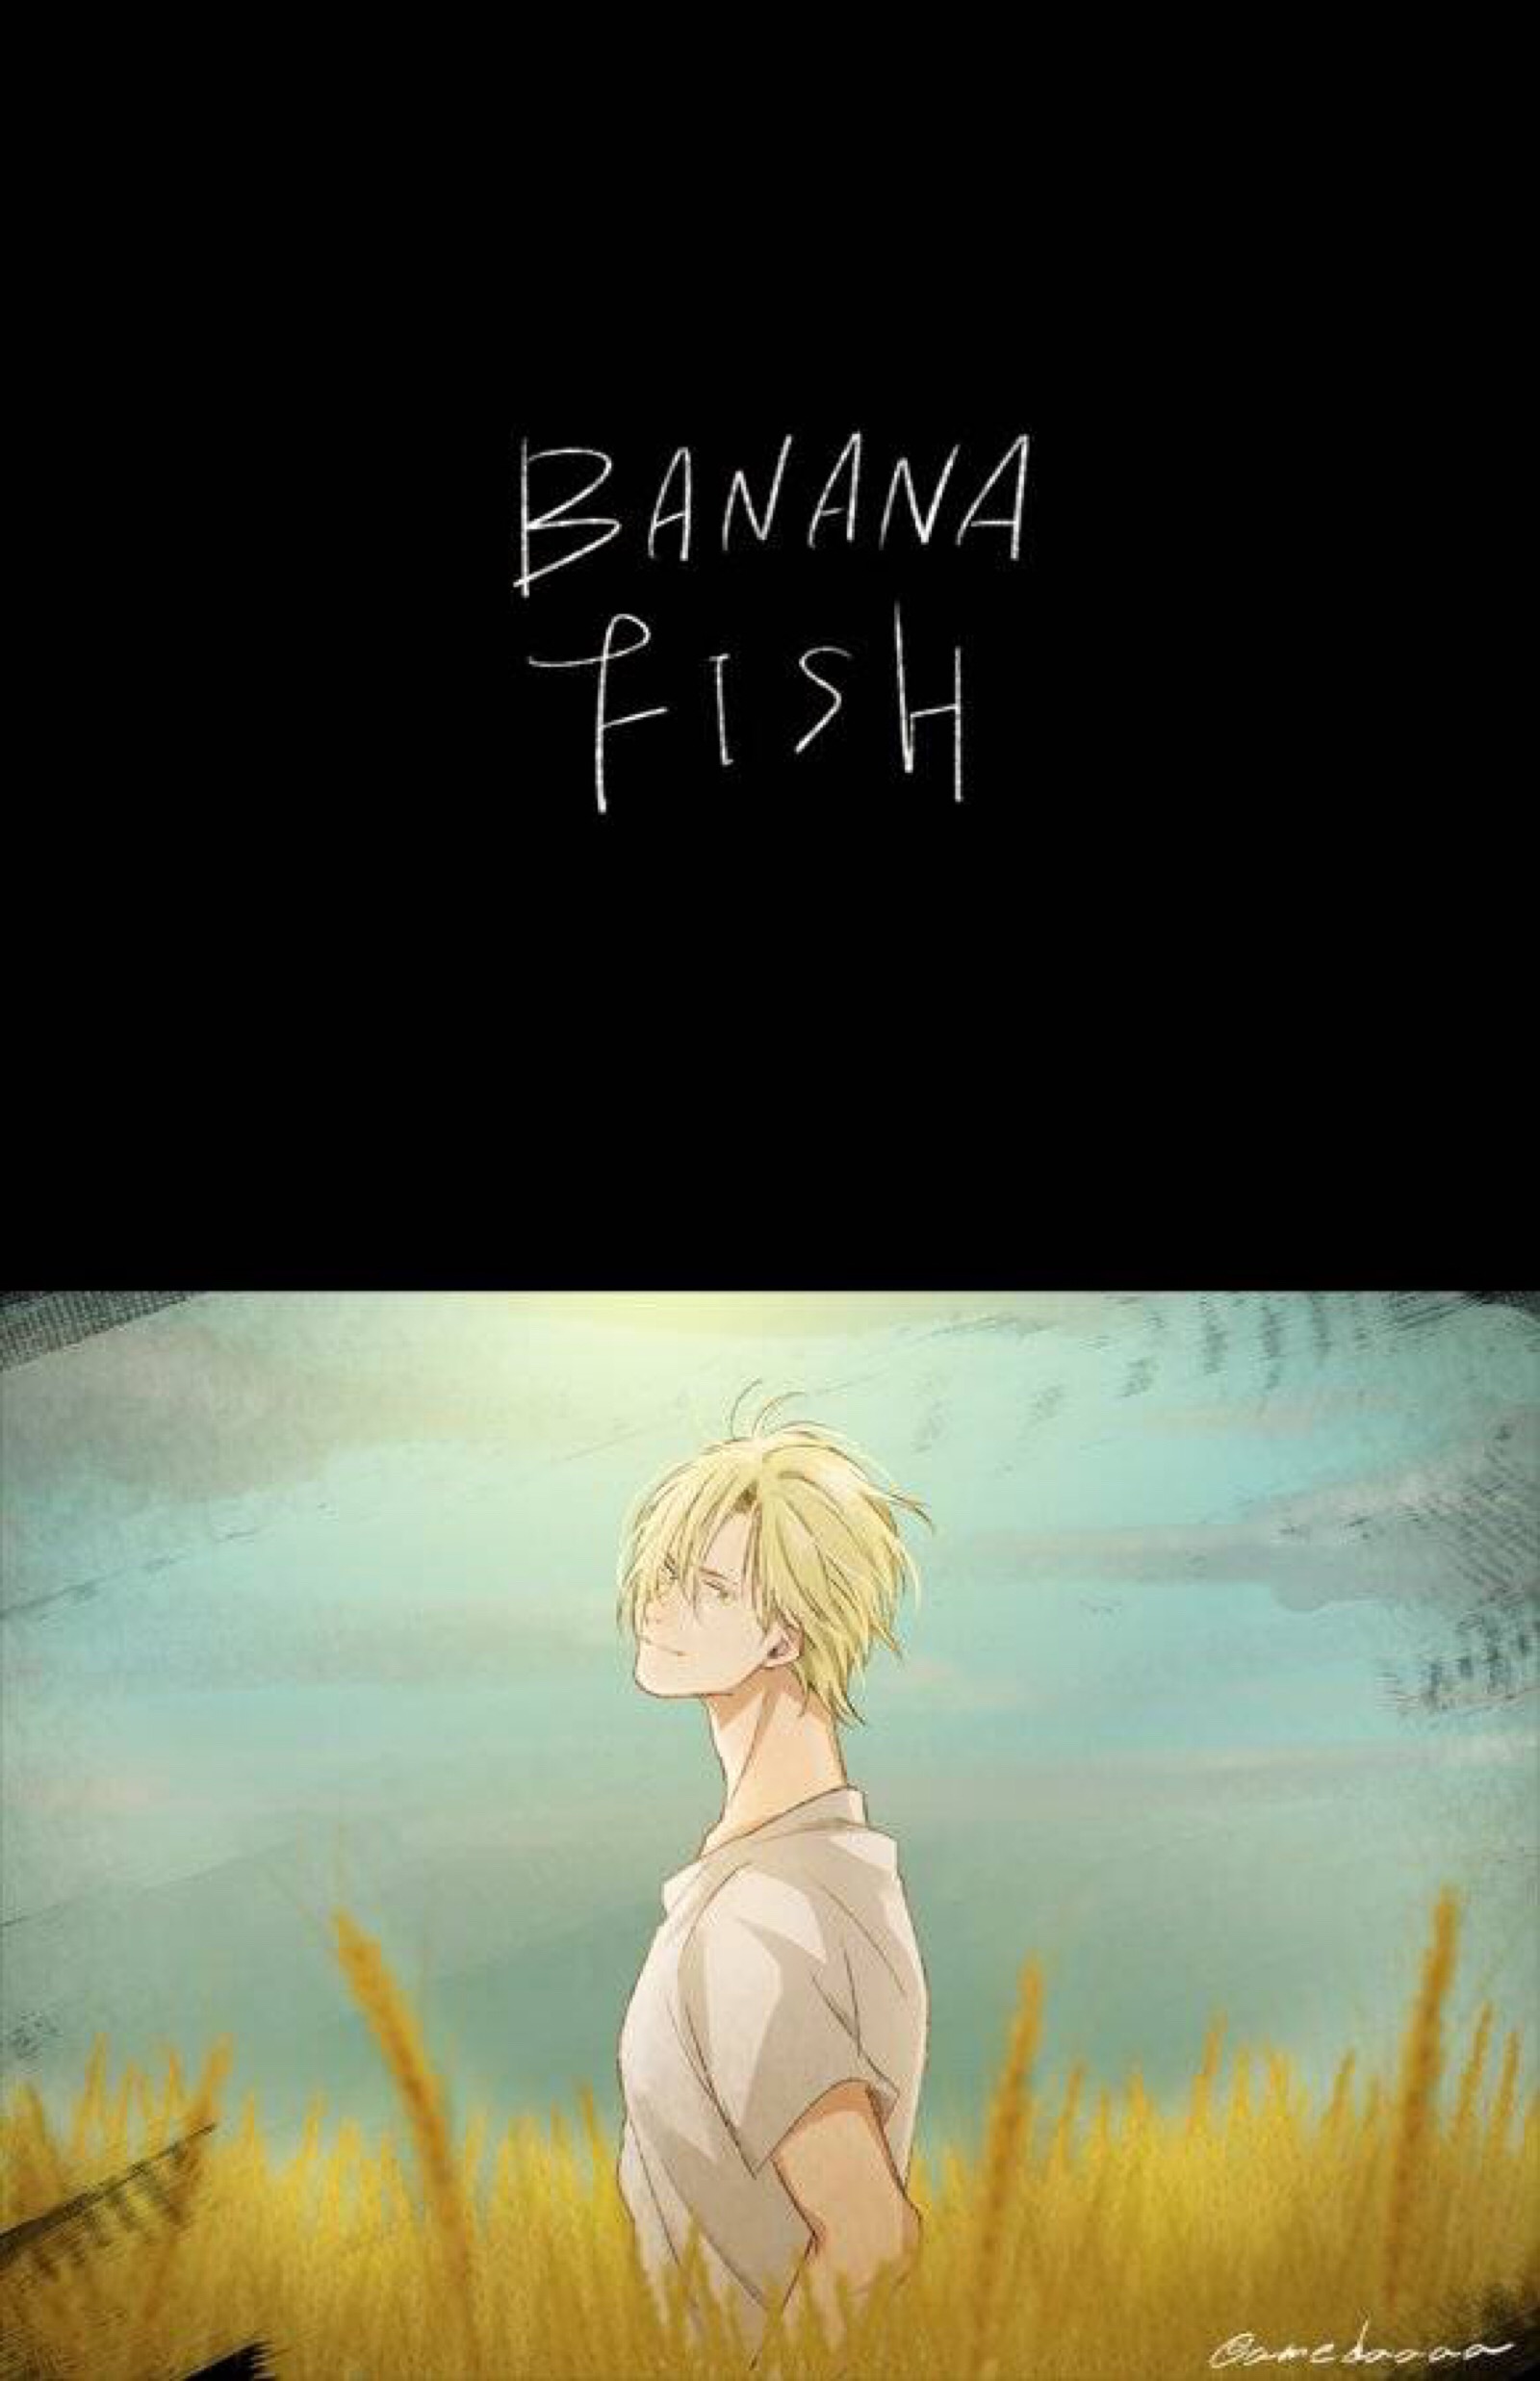 banana fish